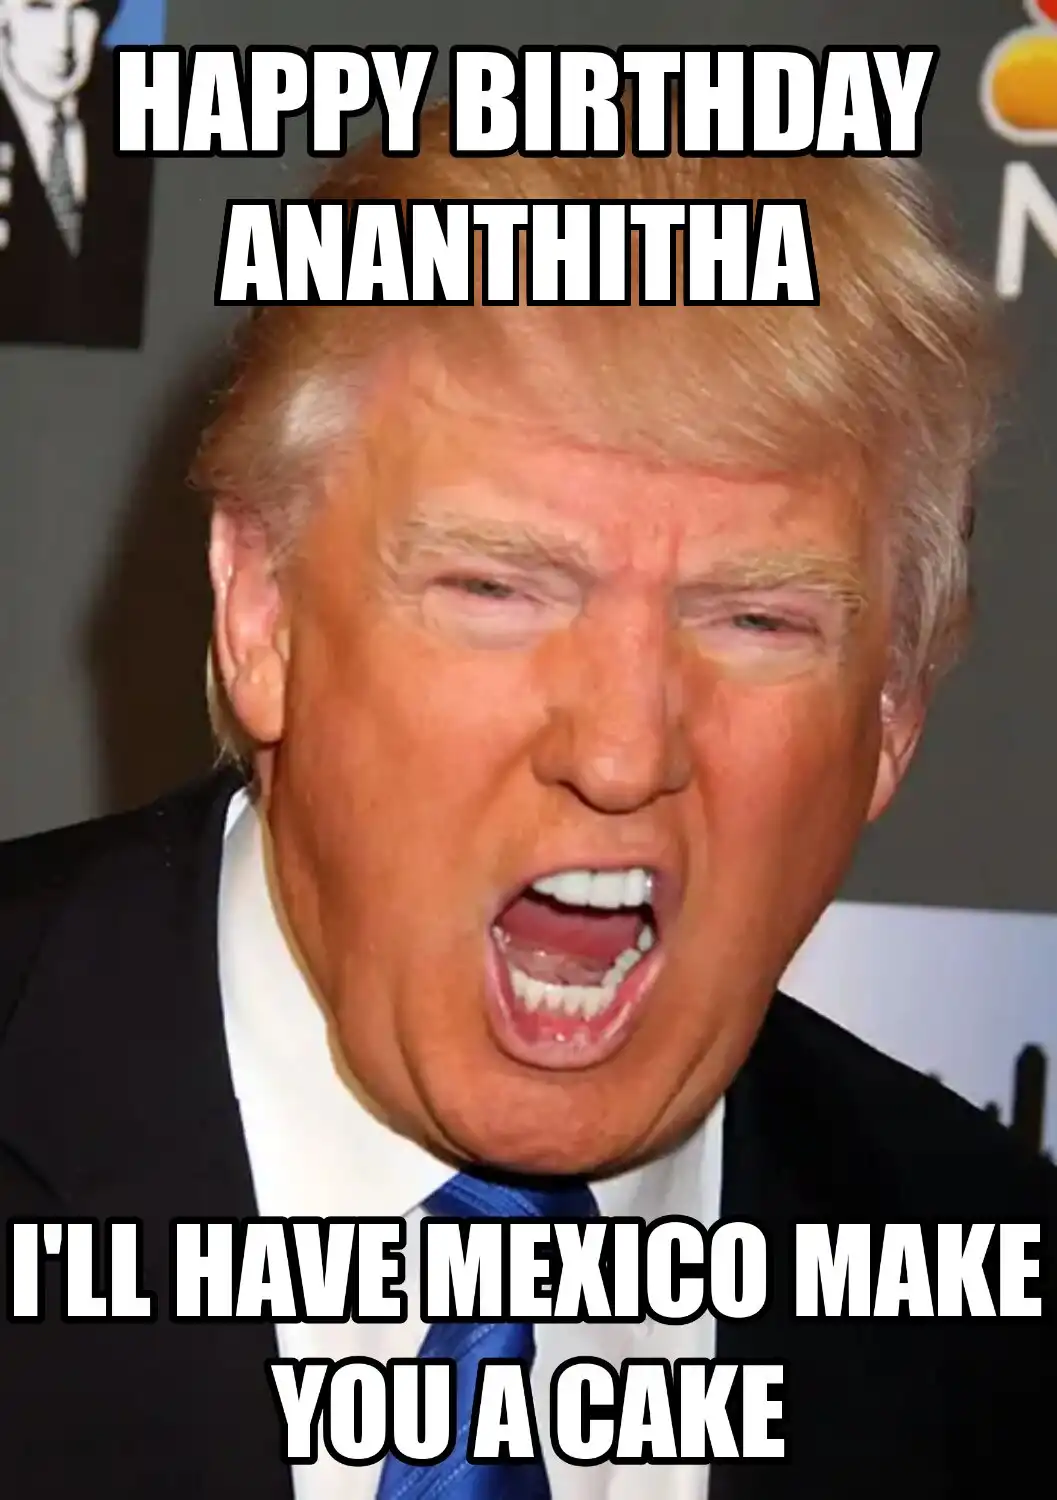 Happy Birthday Ananthitha Mexico Make You A Cake Meme